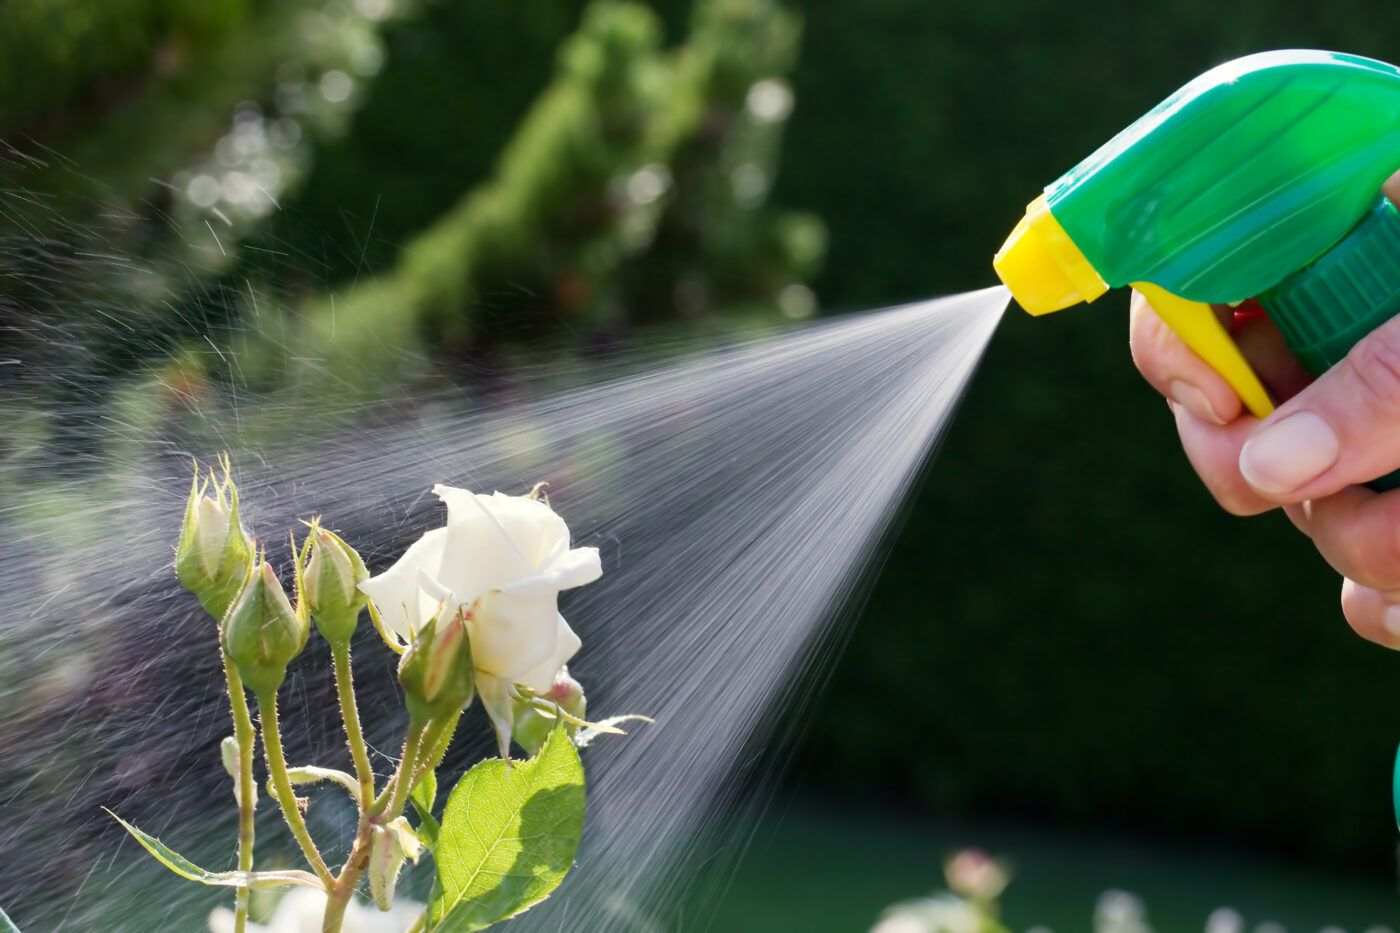 spraying garden pests